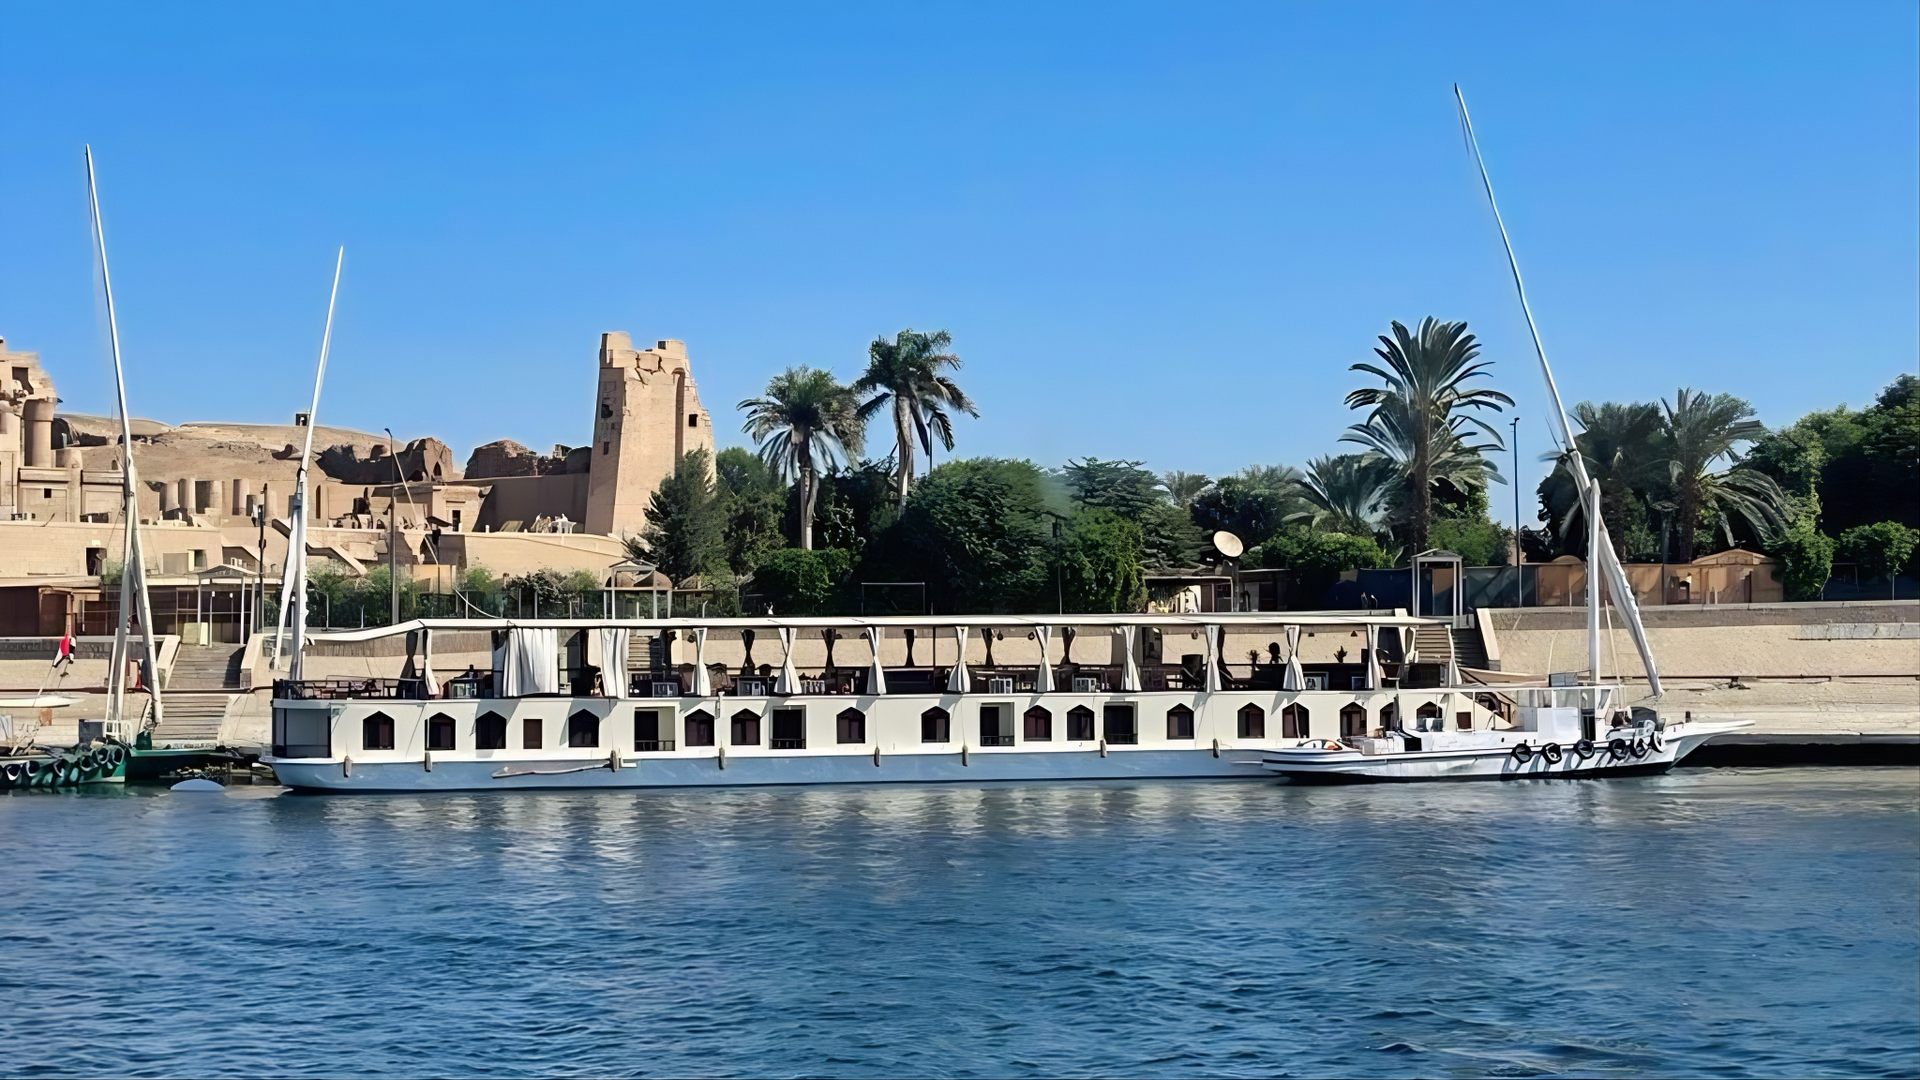 dahabiya sur le Nil, croisière sur le Nil, croisière petit bateau, agence de voyage egypte, croisière Deluxe Nil, Louxor, Assouan, Egypte, felouque sur le Nil,